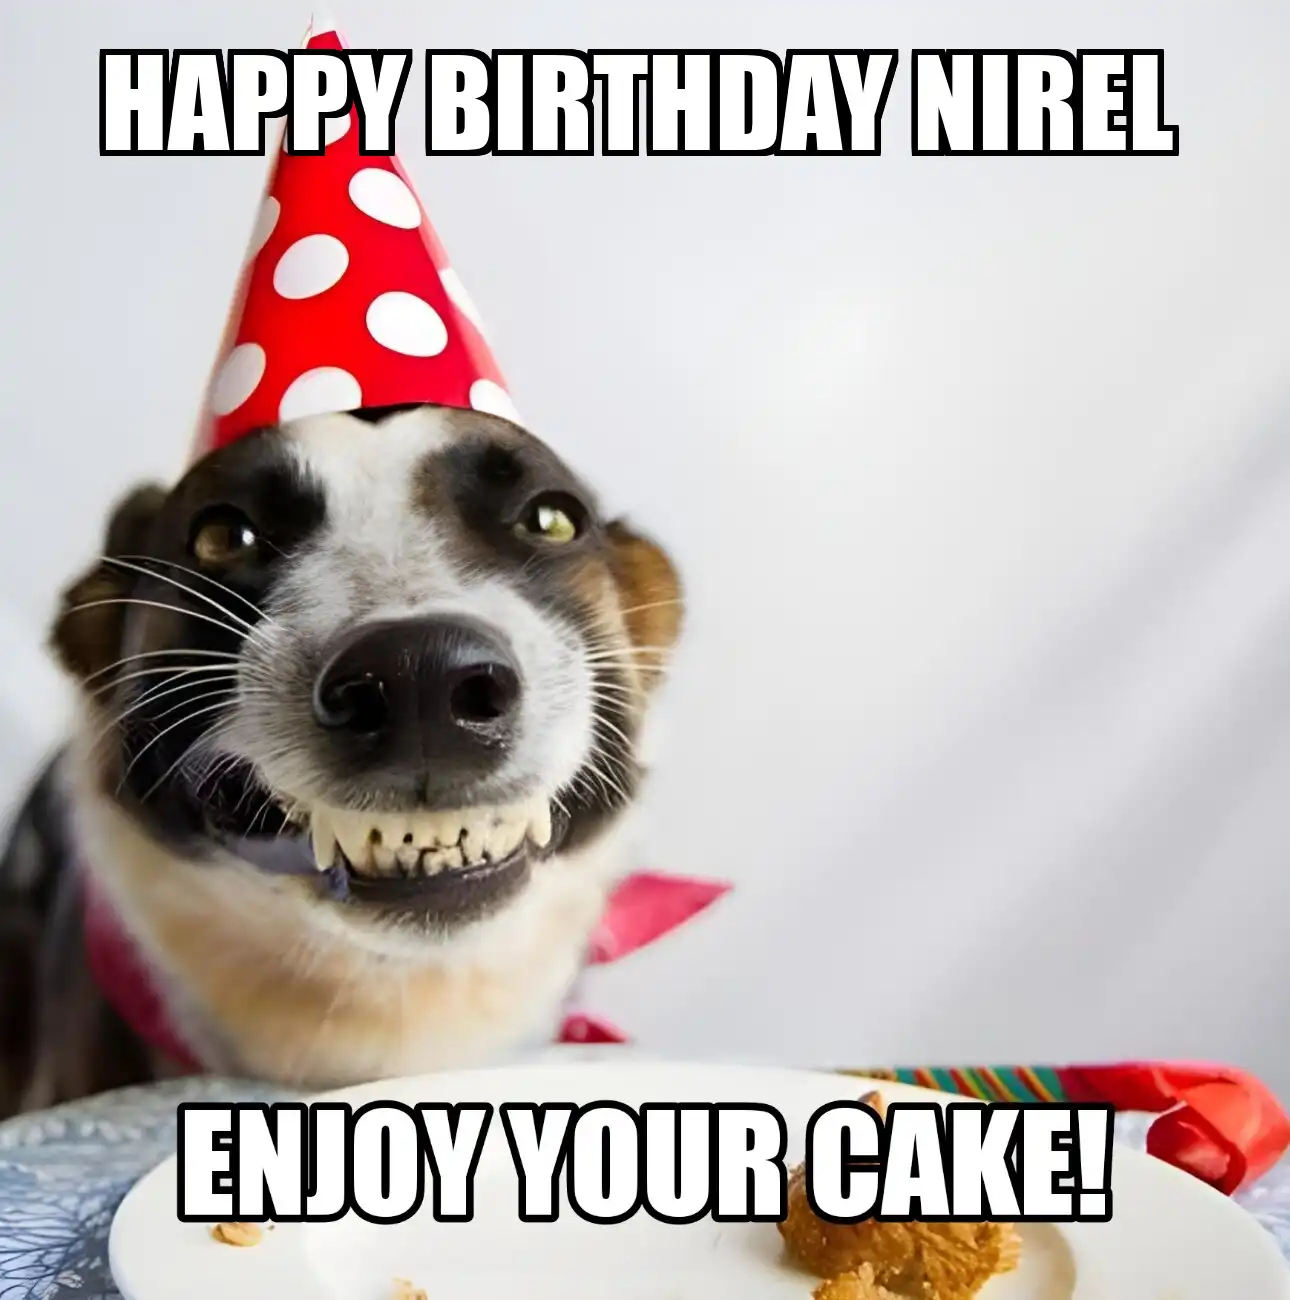 Happy Birthday Nirel Enjoy Your Cake Dog Meme